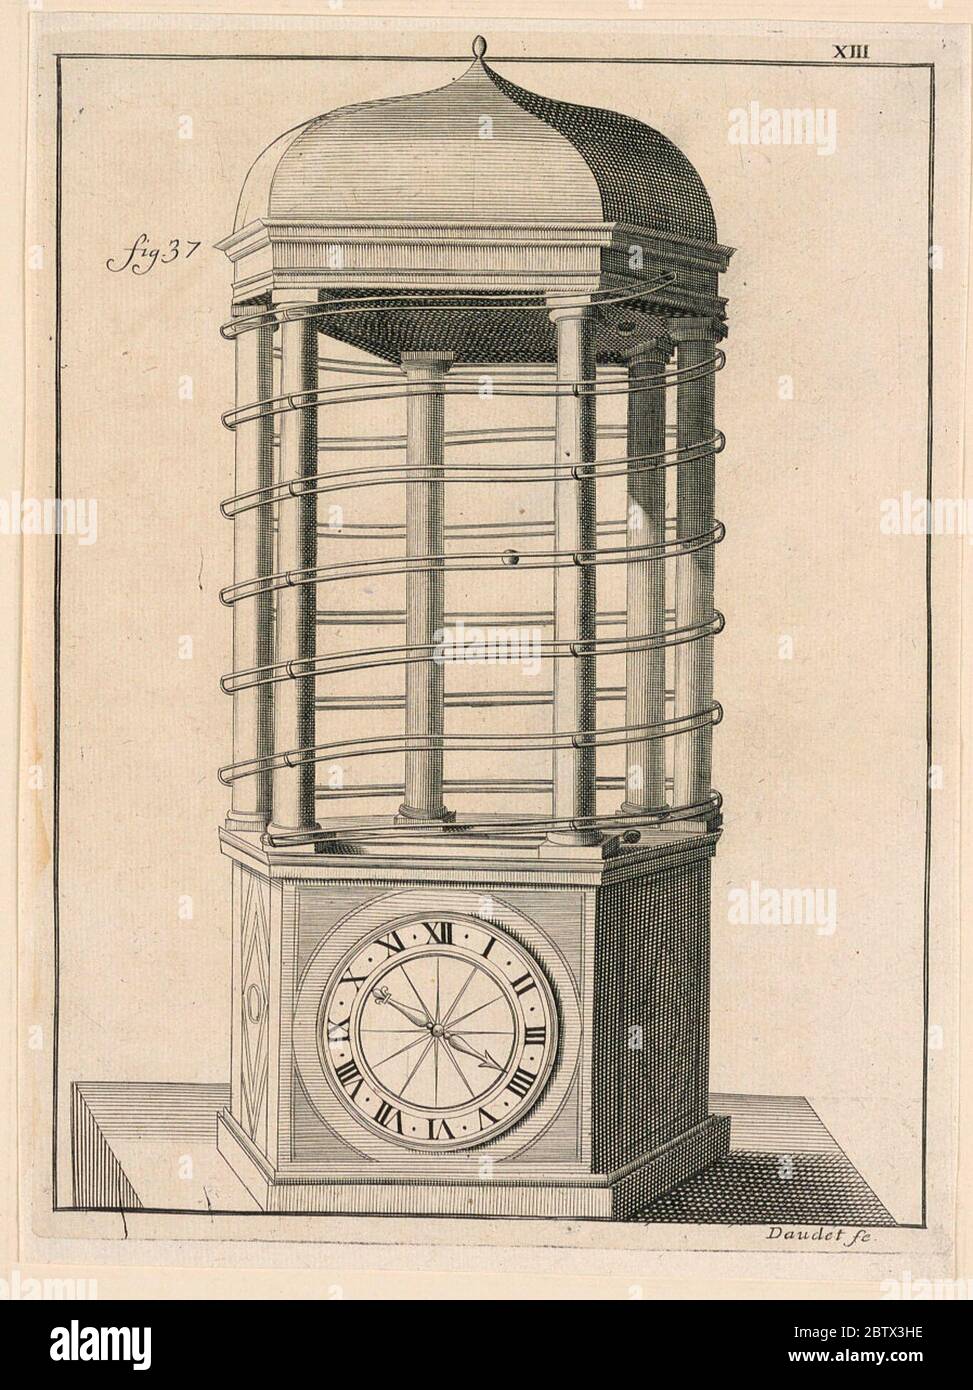 Design For a Clock pl XIII from Recueil dOuvrages Curieux de Mathematique et de Mecanique ou Description du Cabinet. Research in Progress Stock Photo